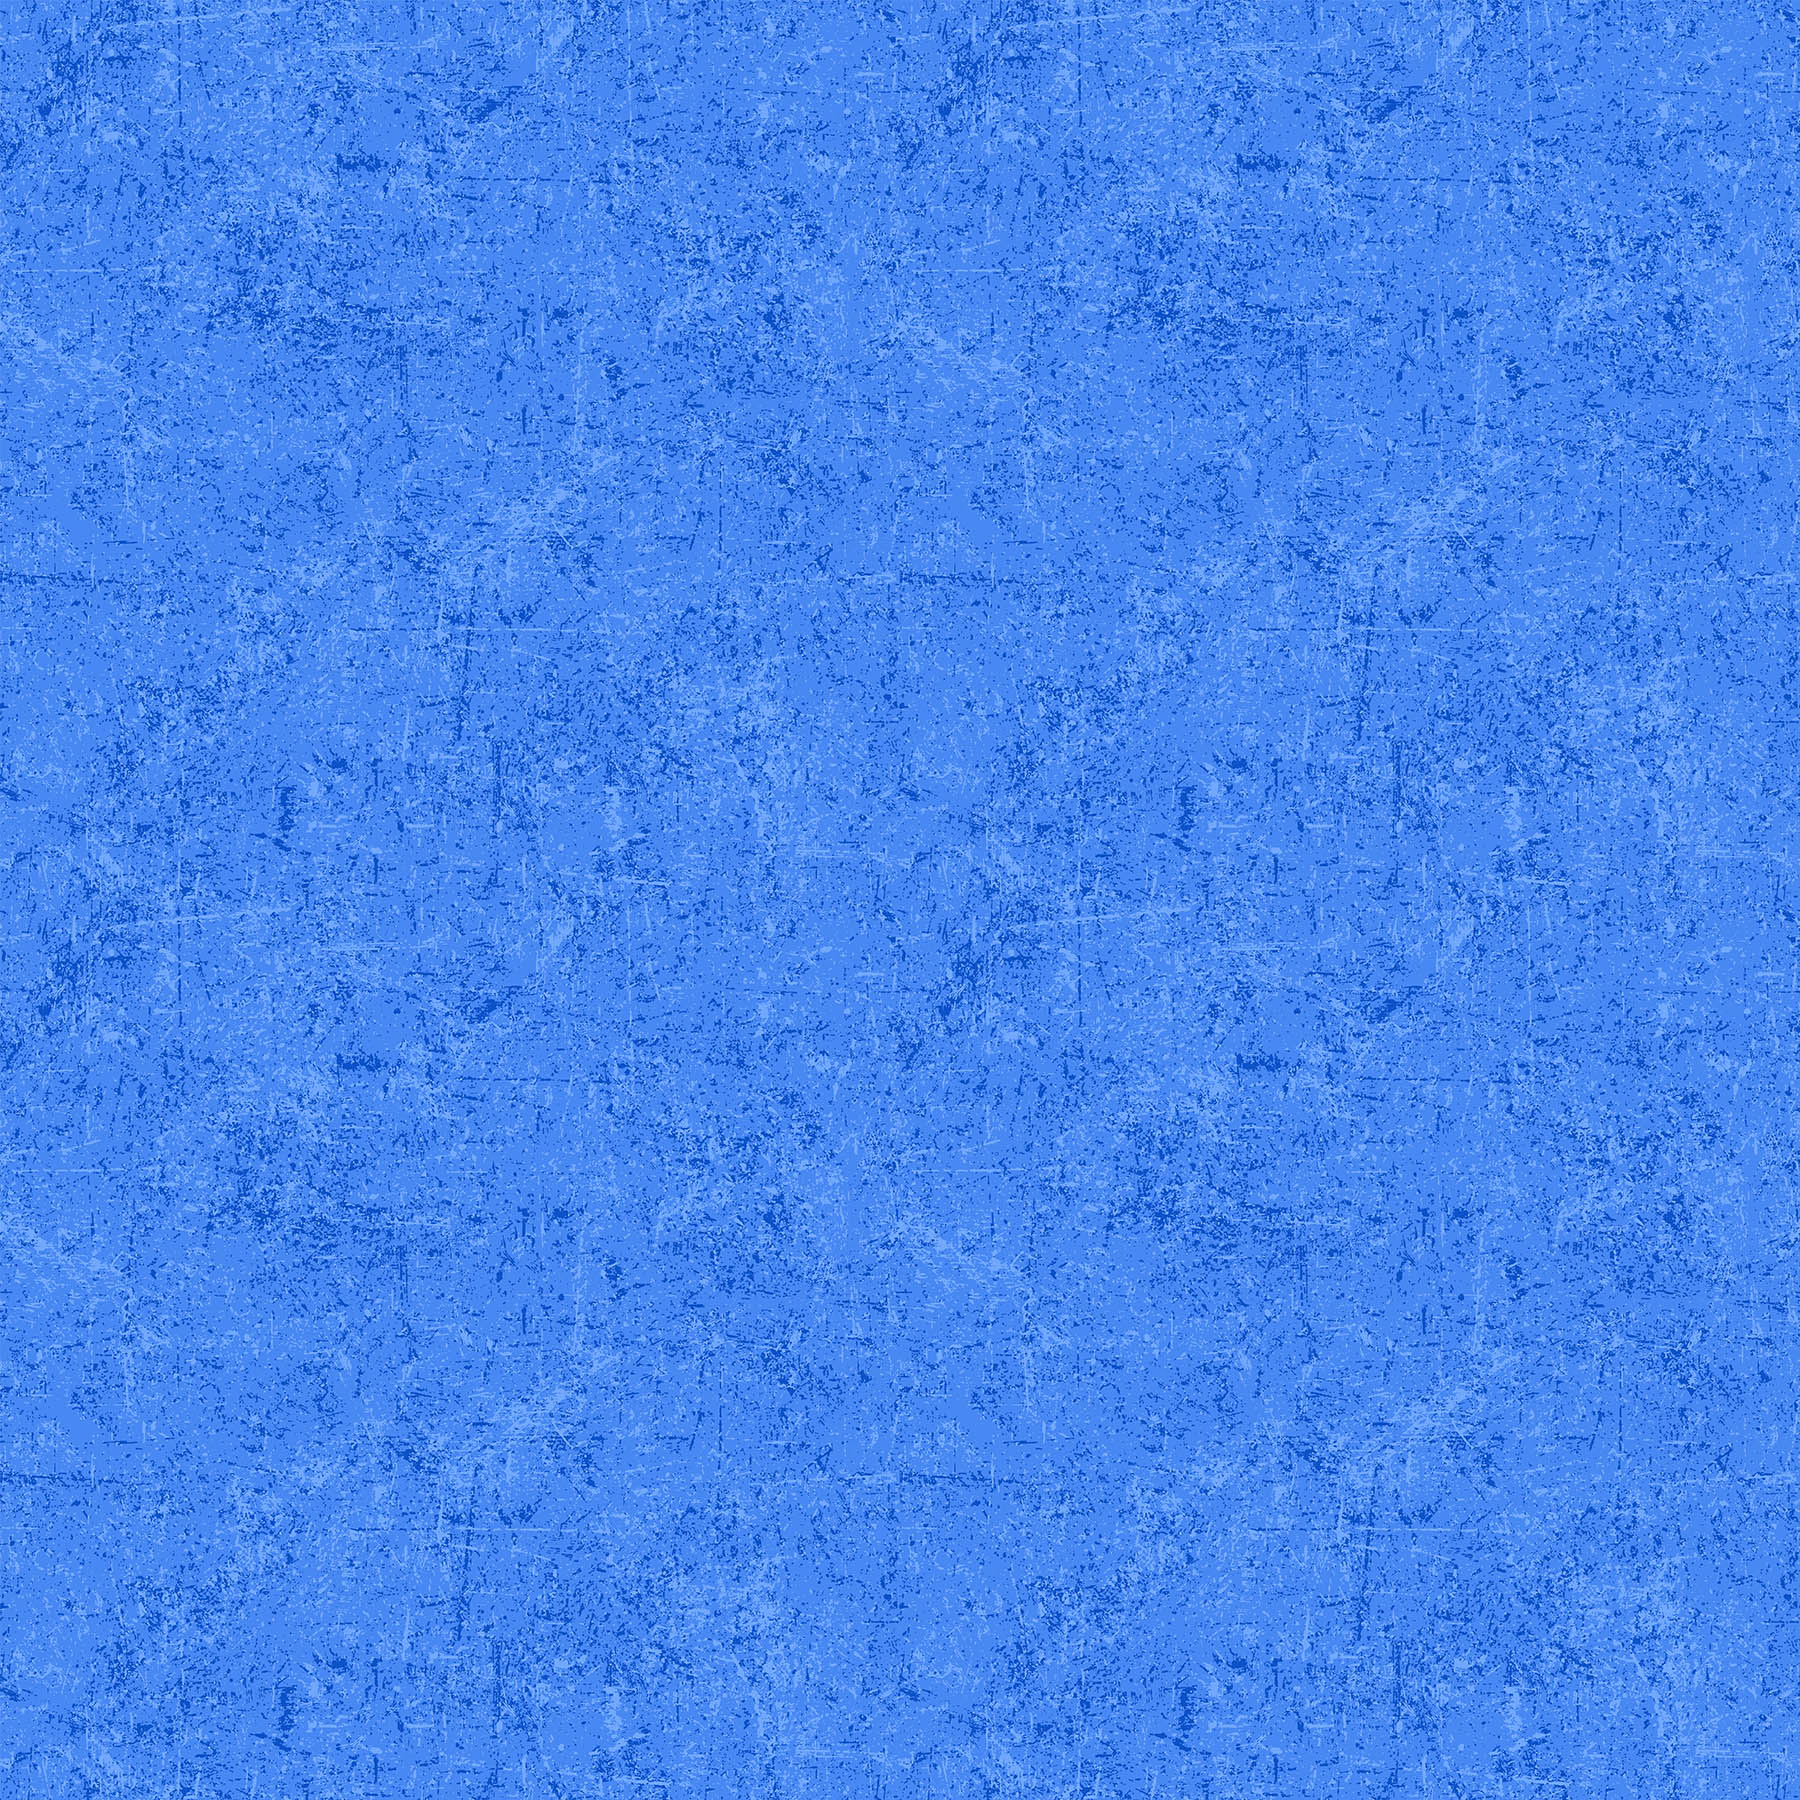 Glisten Quilt Fabric - Blender in Cornflower Blue - P10091-42